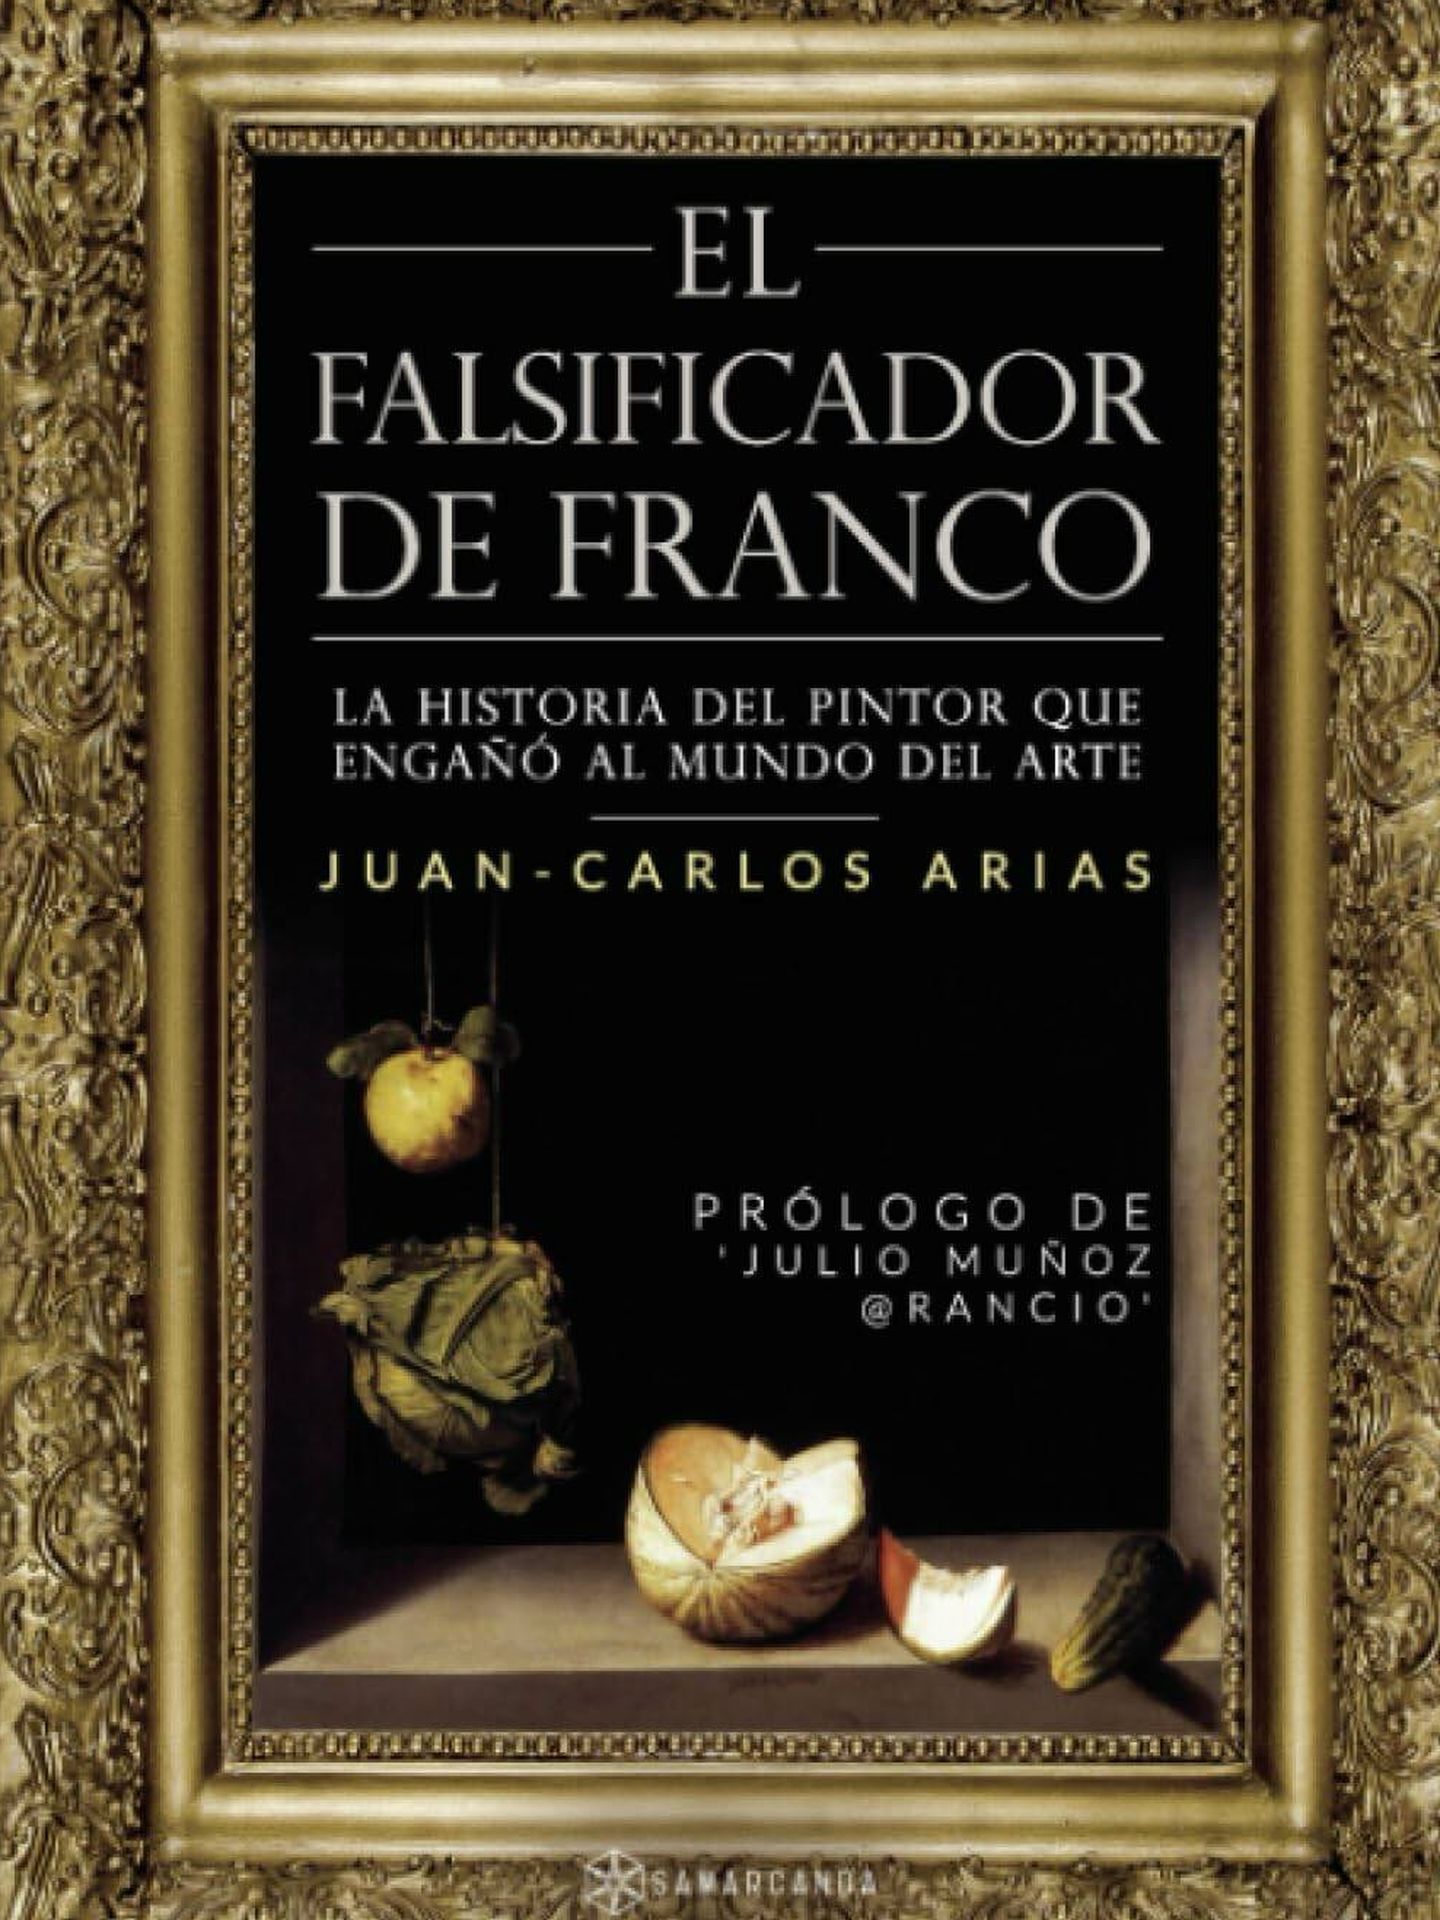 Portada de  'El falsificador de Franco. La historia del pintor que engañó al mundo del arte', de Juan Carlos Arias. 